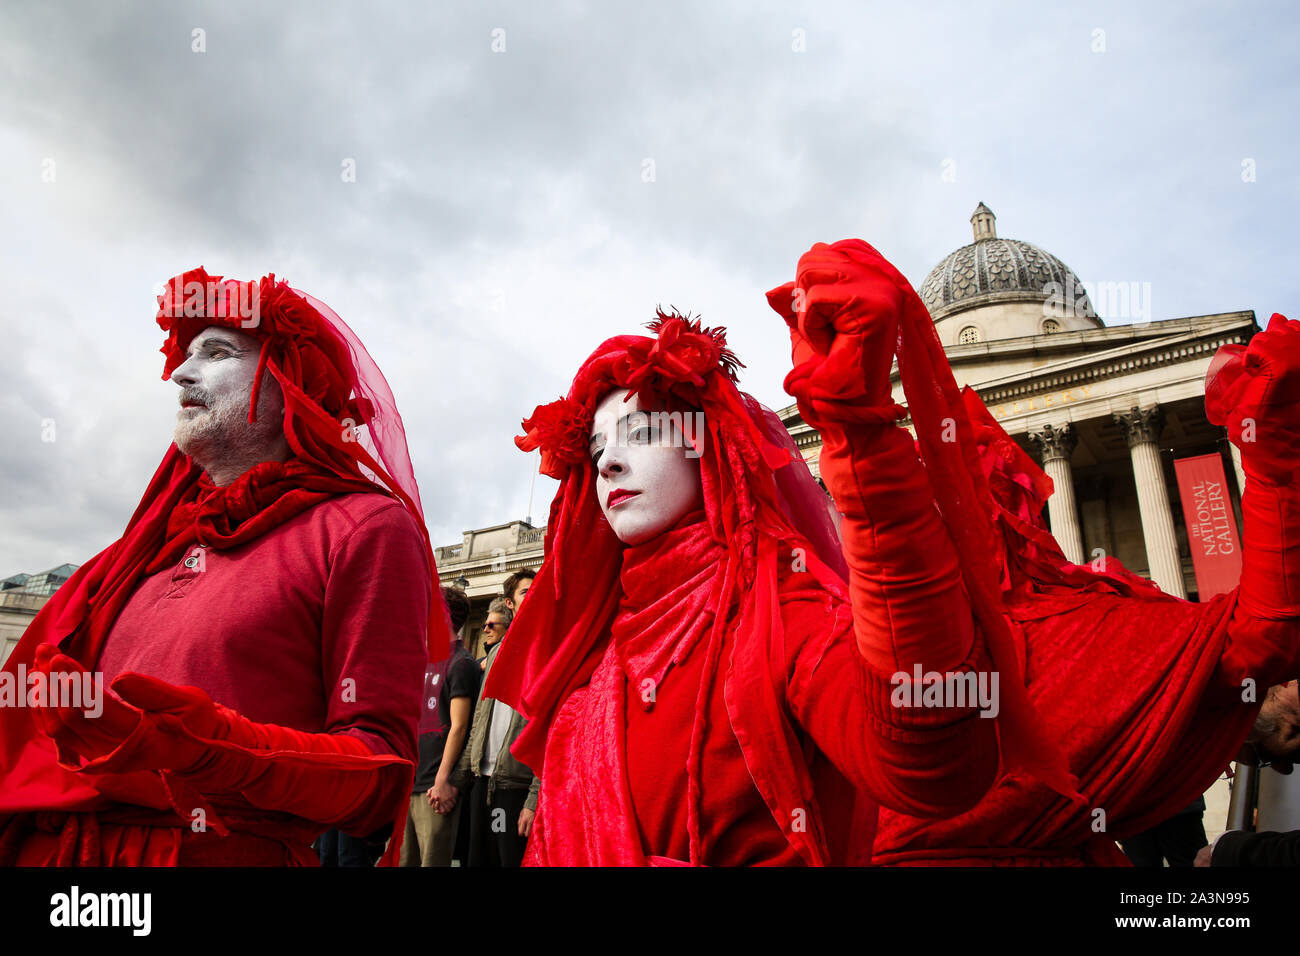 Les membres de la Brigade rouge de l'Extinction du mouvement de rébellion dans leurs costumes pour protester sur les marches de Trafalgar Square au cours du troisième jour de leur action de deux semaines à Westminster. Le changement climatique les militants s'appelant pour le gouvernement britannique à prendre des mesures d'urgence sur les changements climatiques. Banque D'Images